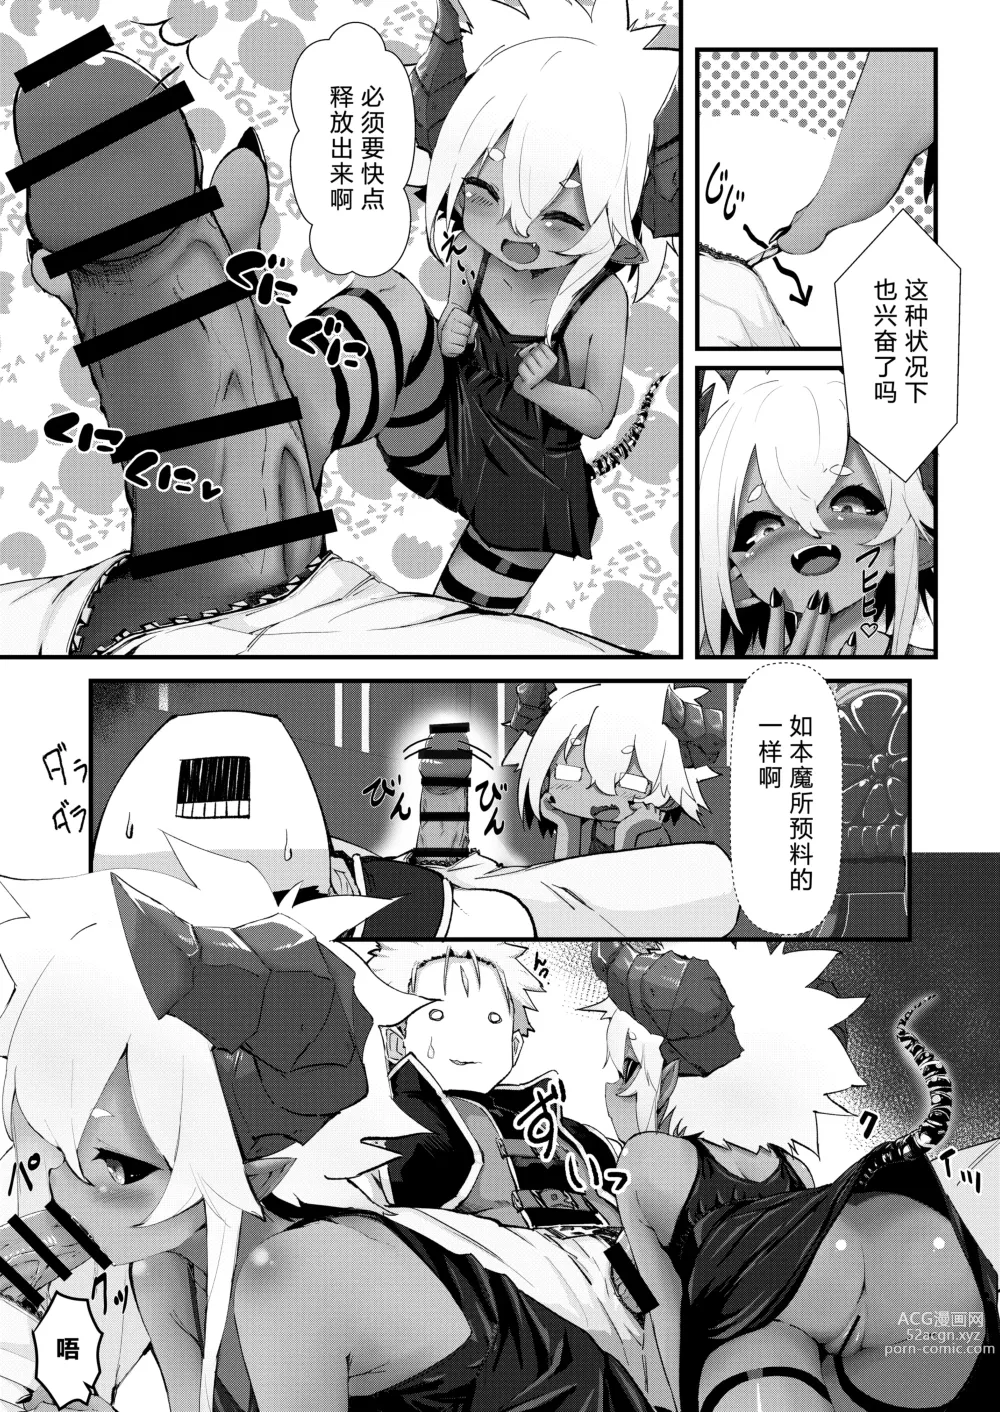 Page 7 of doujinshi 吉尔·罗伯特的地下城攻略!?